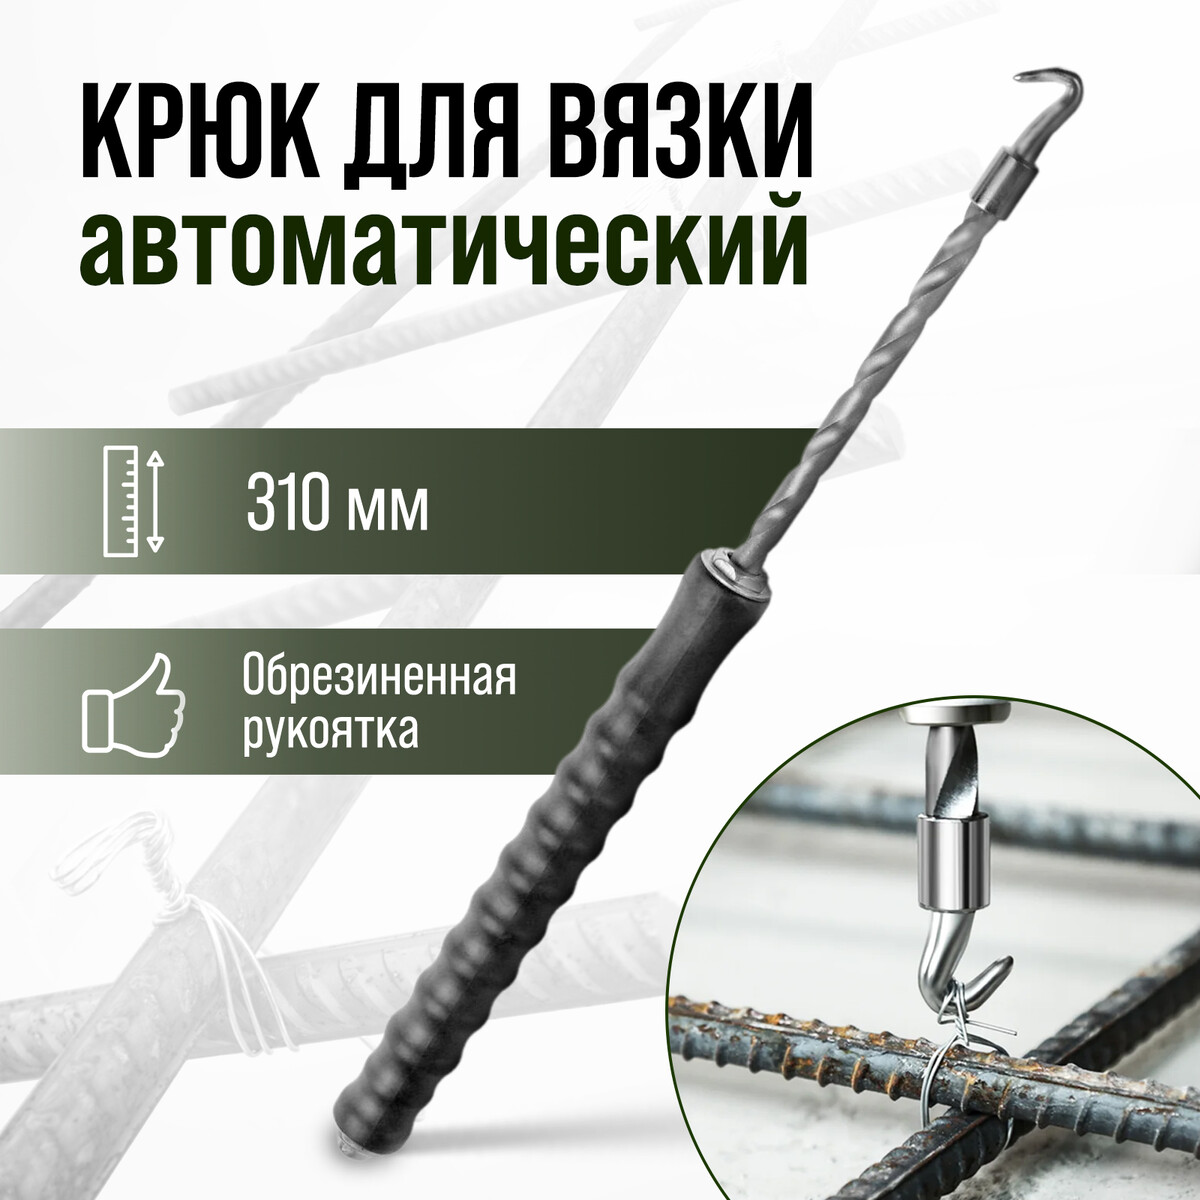 Крюк для вязки арматуры тундра, автоматический, обрезиненная рукоятка, 310 мм топор bartex универсальный рукоятка фибергласовая обрезиненная 0 64 кг